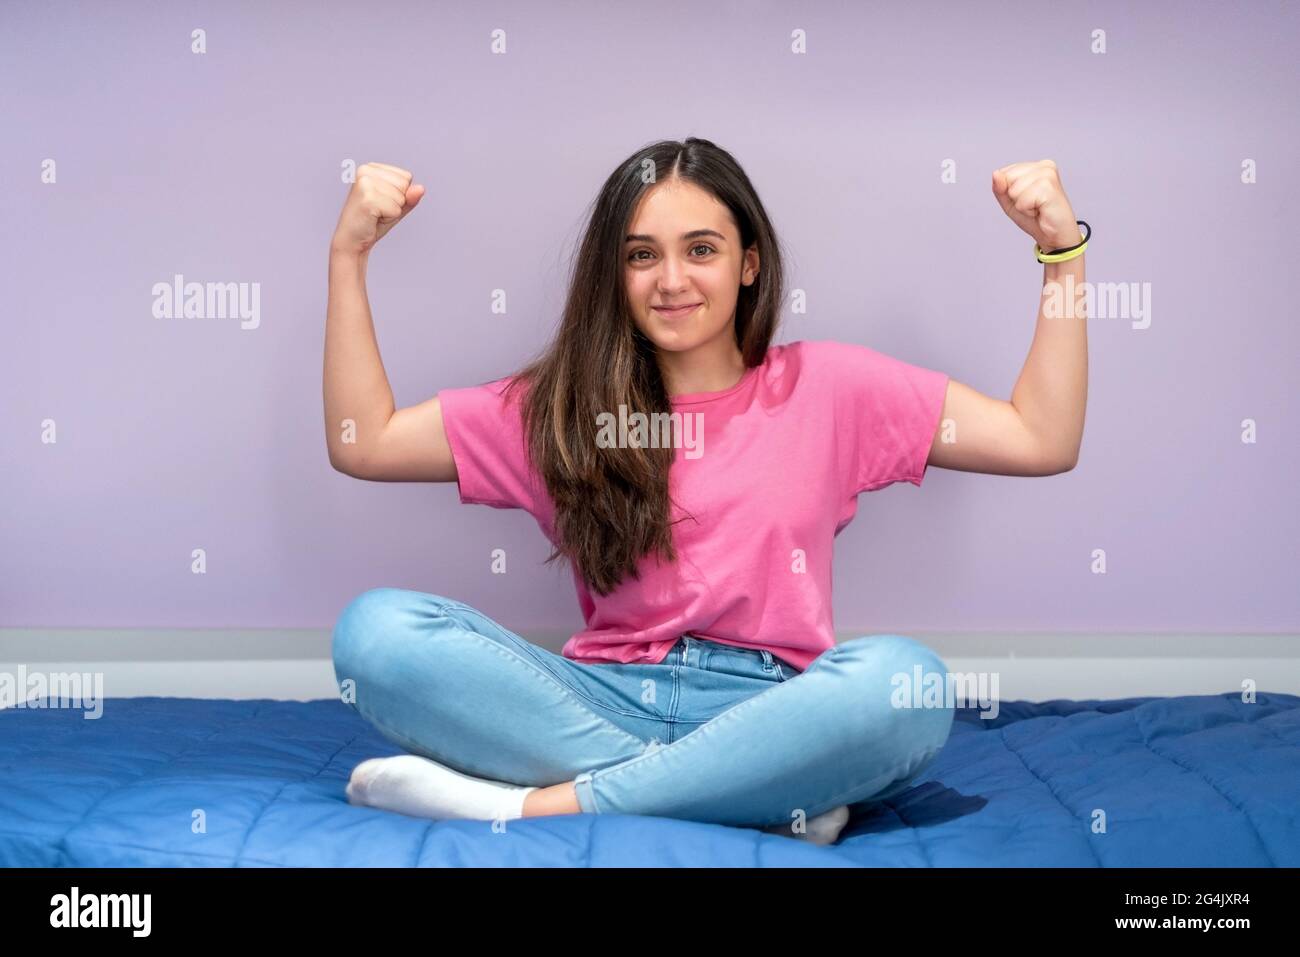 Ritratto a lunghezza intera di una ragazza adolescente sana e fresca che sorride mentre si posa con le braccia flette mostrando forza muscolare e immunità Foto Stock